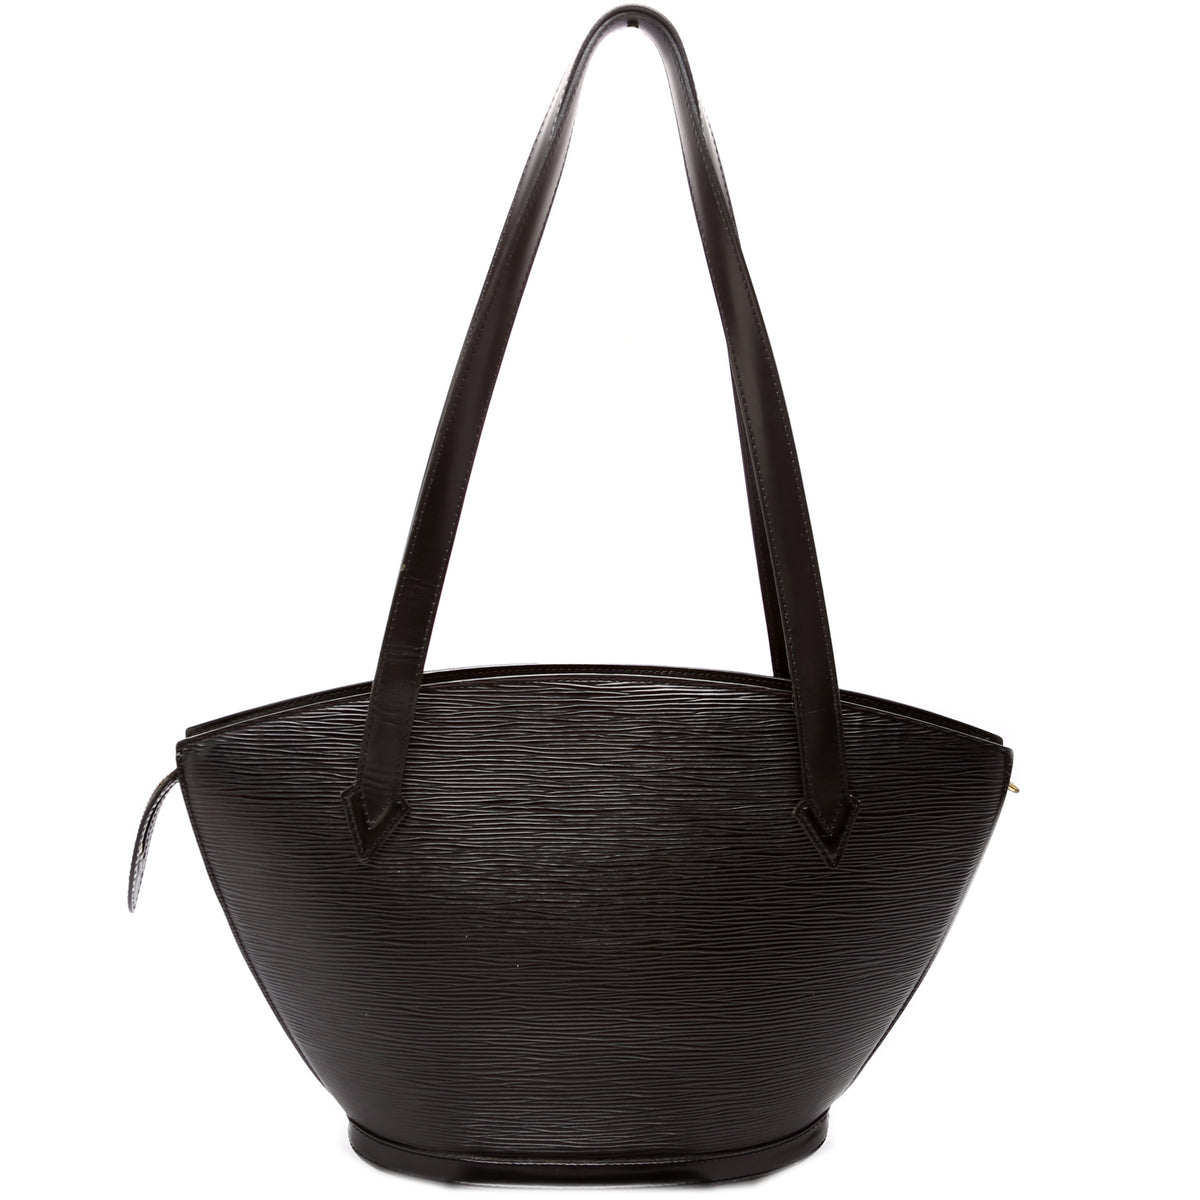 Authentic Louis Vuitton Black Epi Leather St. Jacques PM Handbag Purse  Shoulder